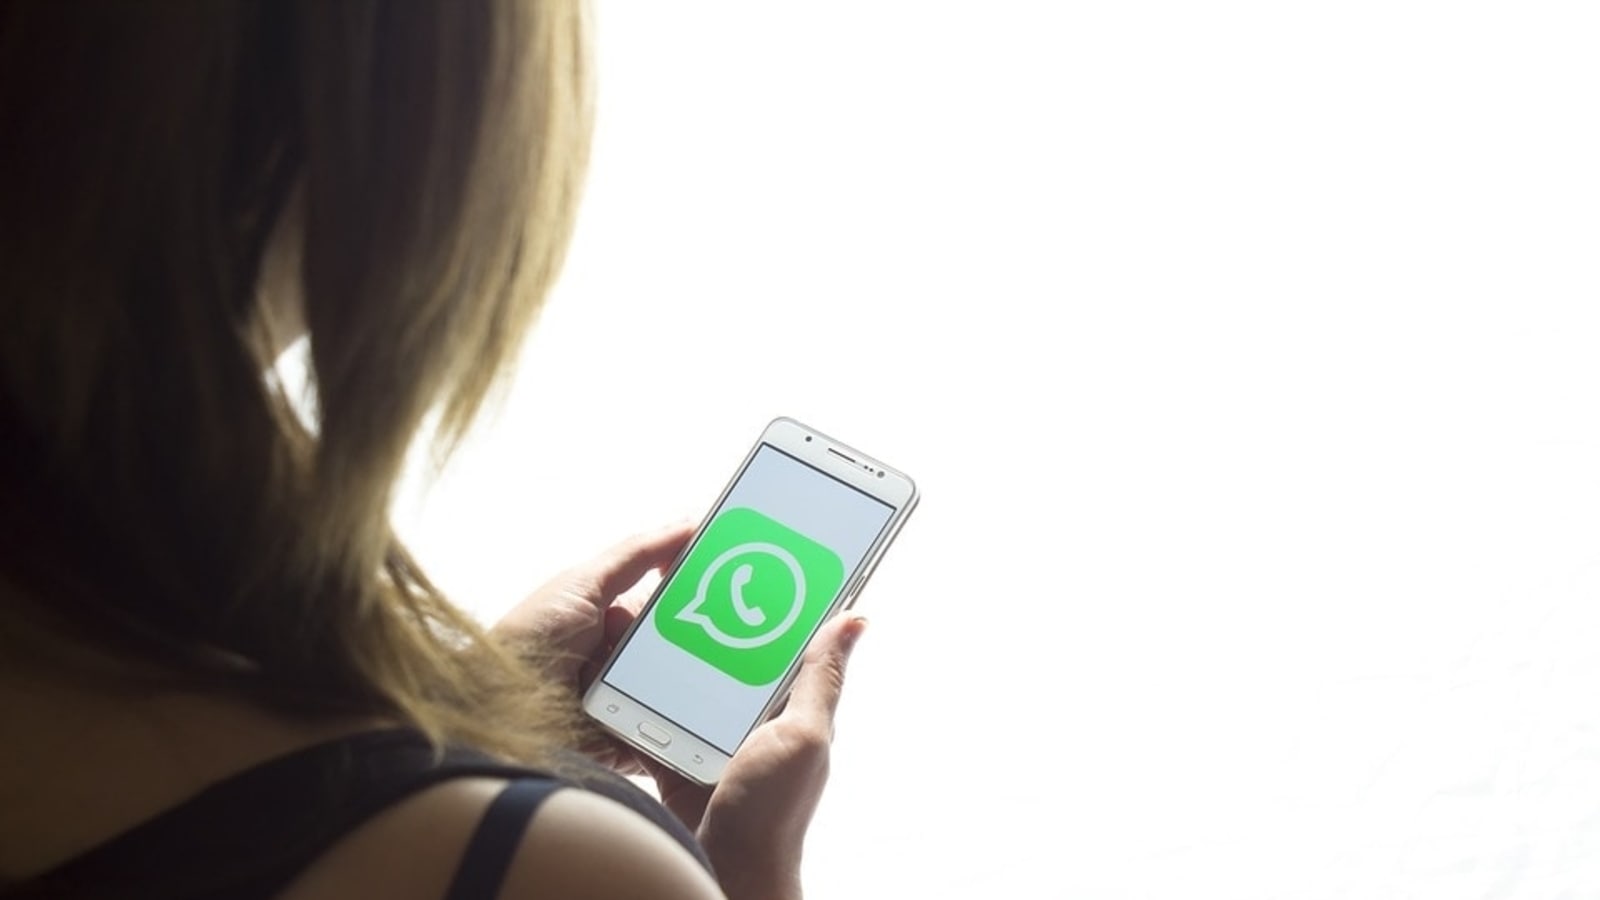 Od ankiet grupowych WhatsApp po podłączanie nowych urządzeń mobilnych — sprawdź niesamowite rzeczy, które prawdopodobnie pojawią się wkrótce